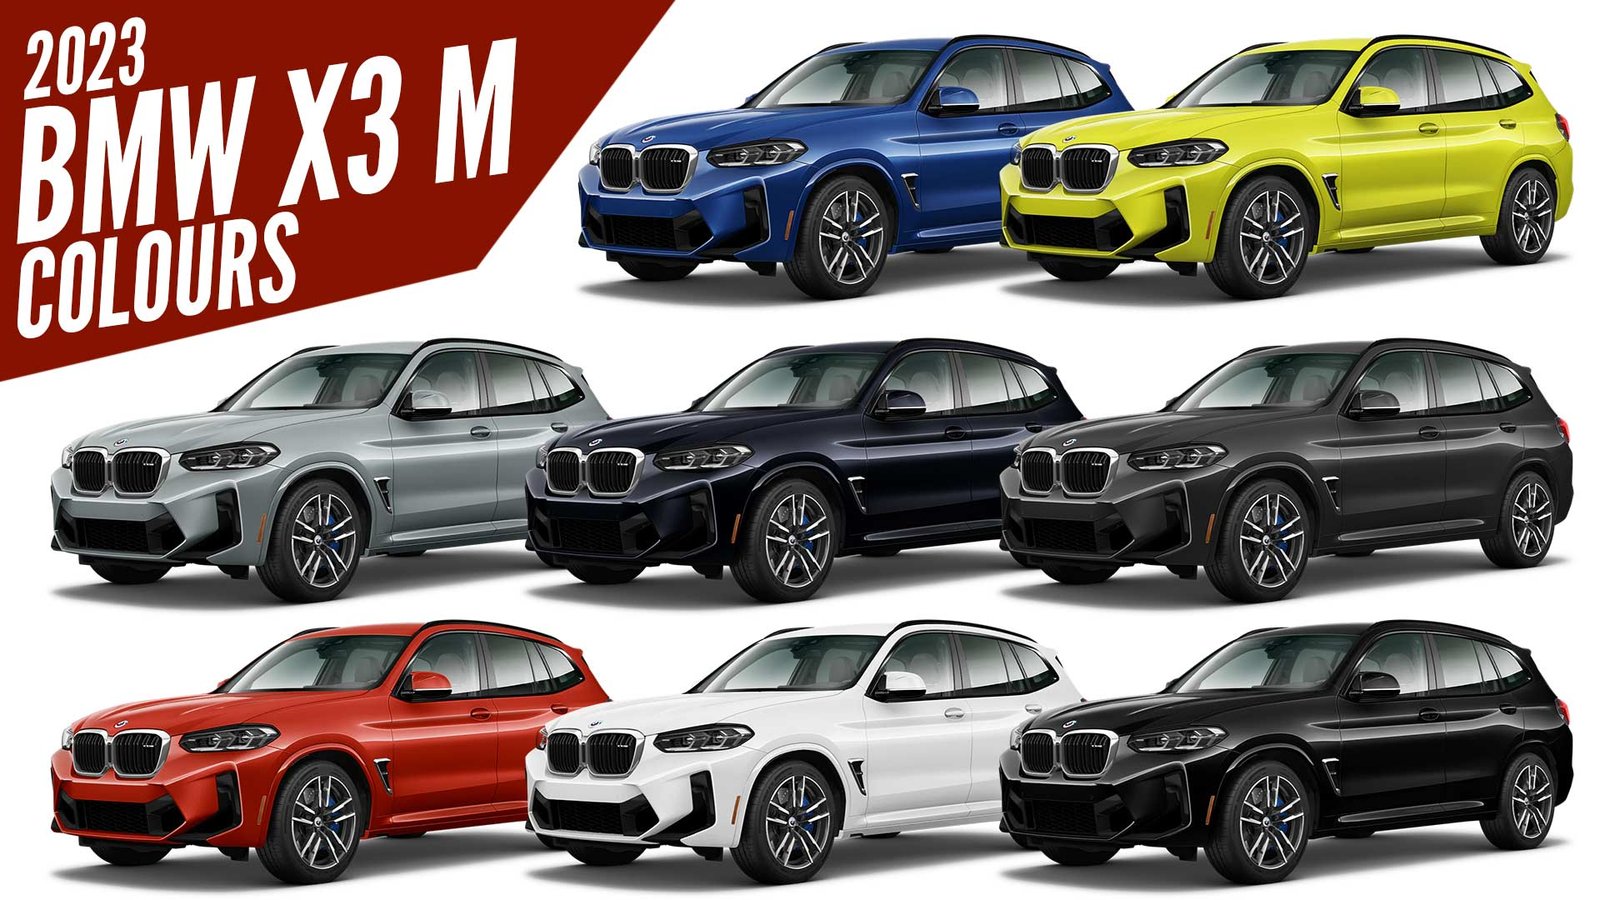 2023 BMW X3 M All Color Options Images AUTOBICS